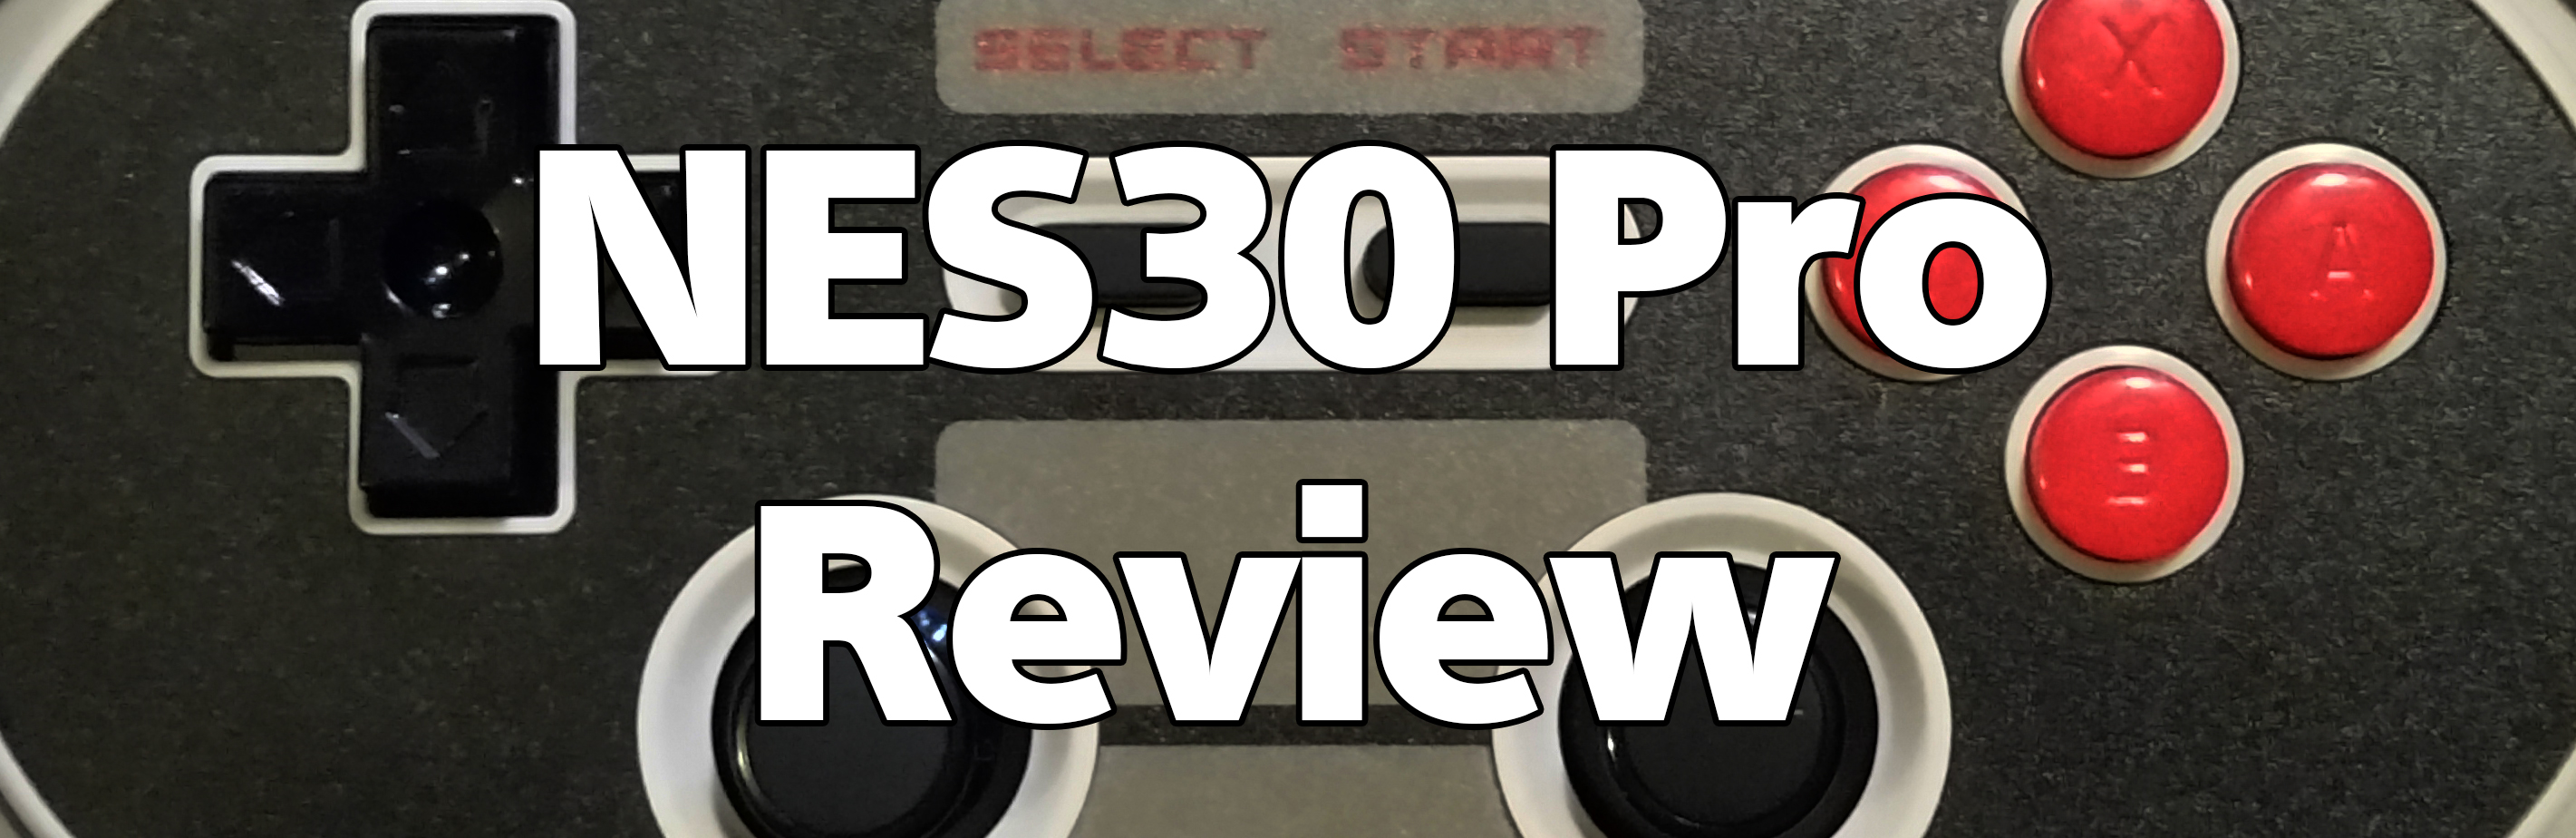 NES30 Pro Review Title